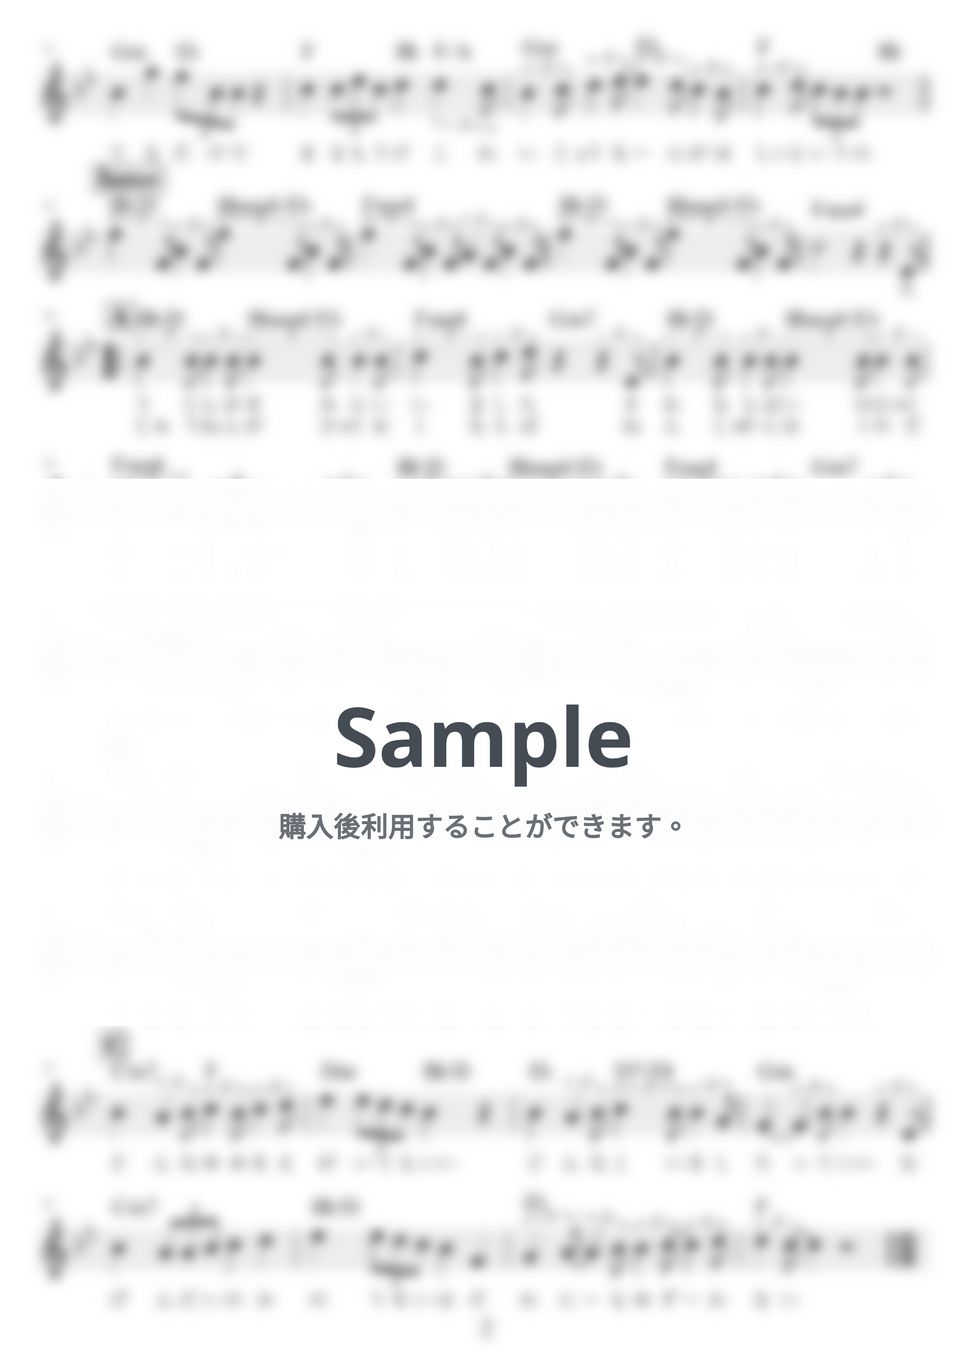 優里 - ビリミリオン by NOTES music